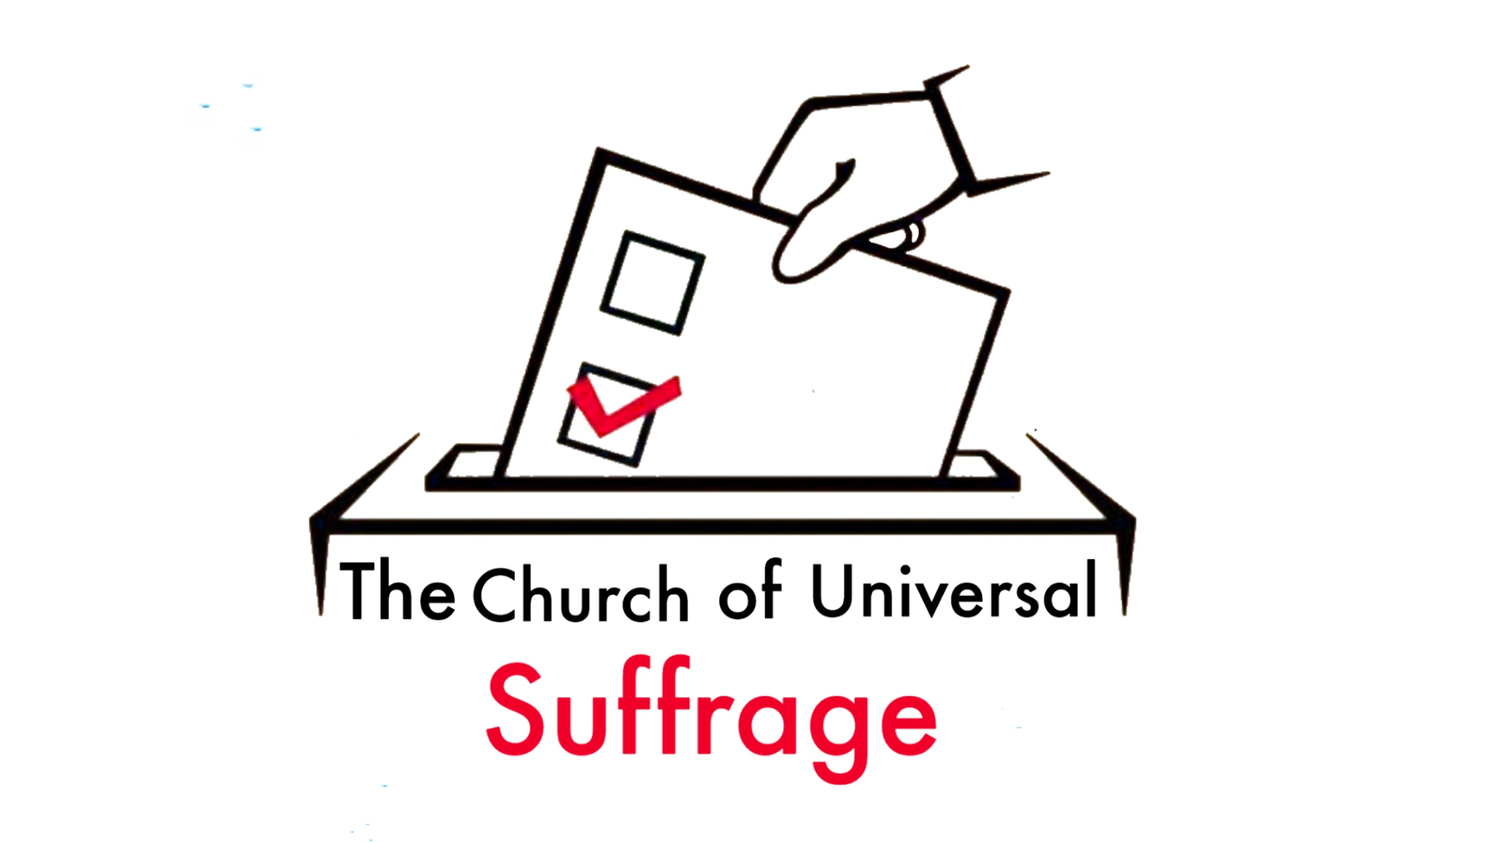 www.universalsuffragechurch.org